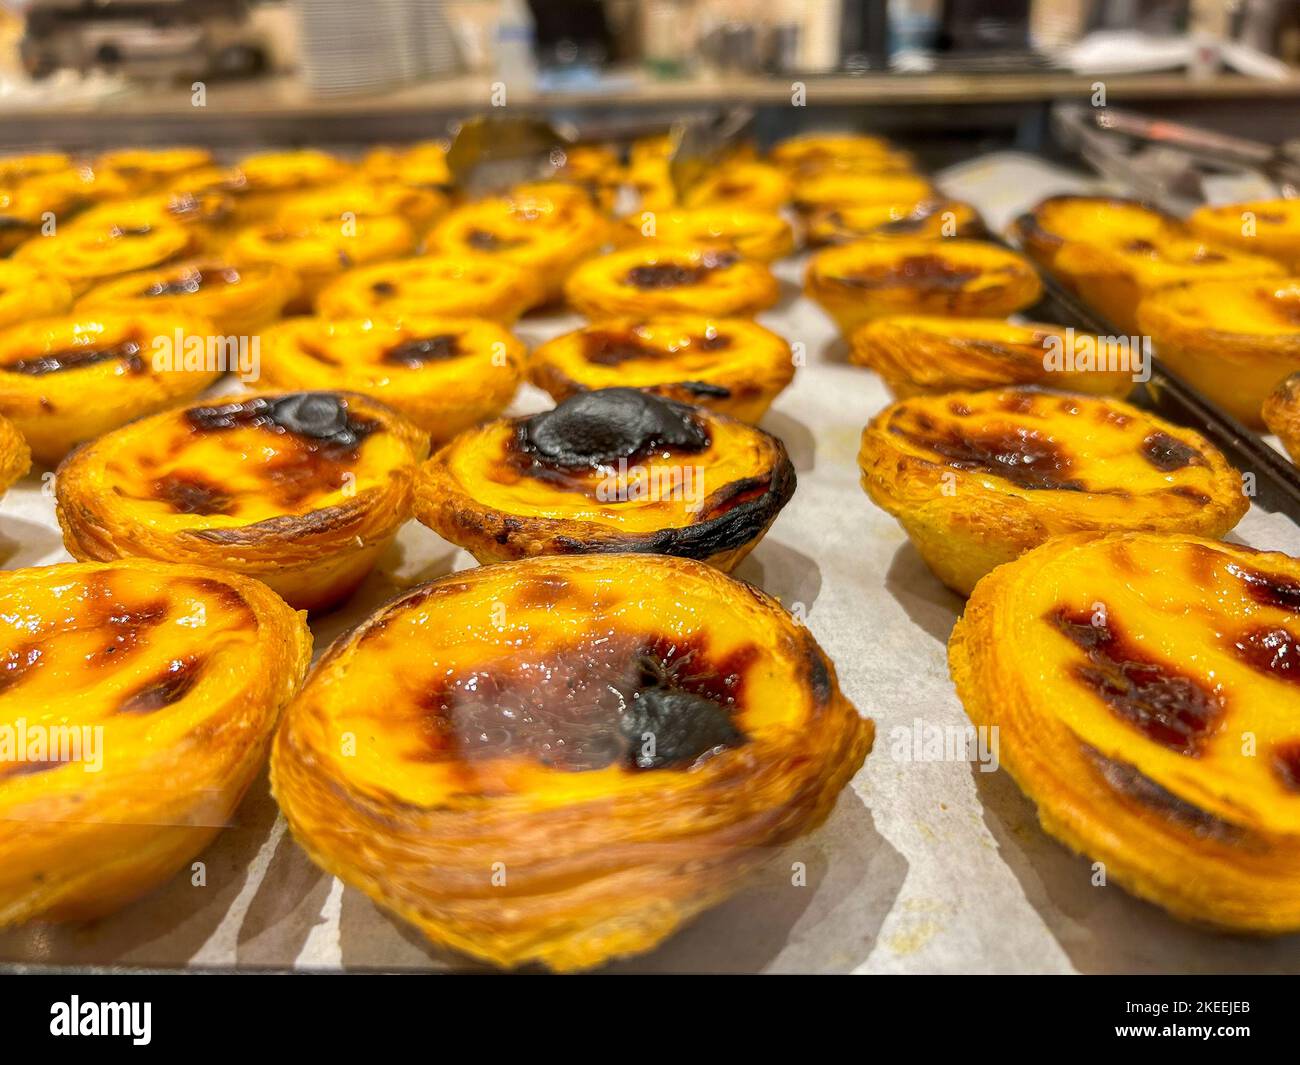 Lisbona, Portogallo, all'interno della panetteria portoghese locale, dettaglio, torte al forno in mostra, specialità locali Foto Stock